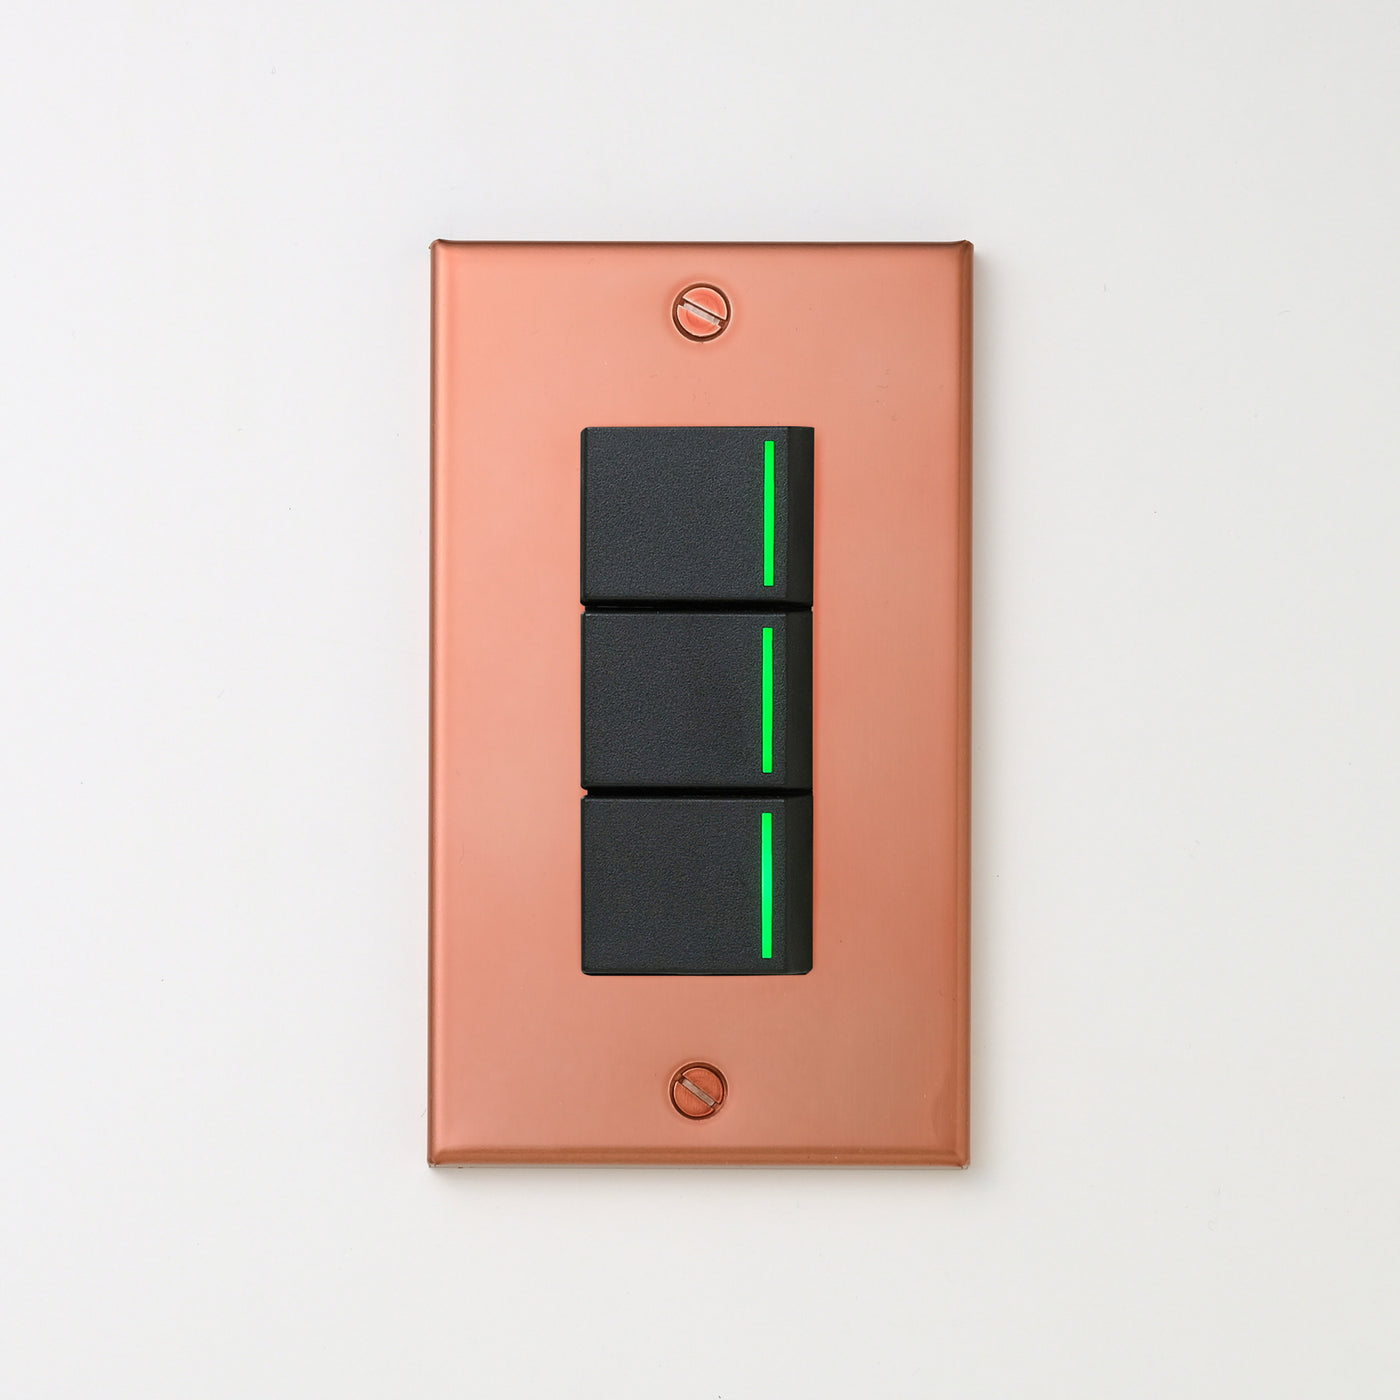 銅色（マット） プレート <br>+ NK 片切、3路ガイドランプ（グリーン）スイッチトリプル  ブラック